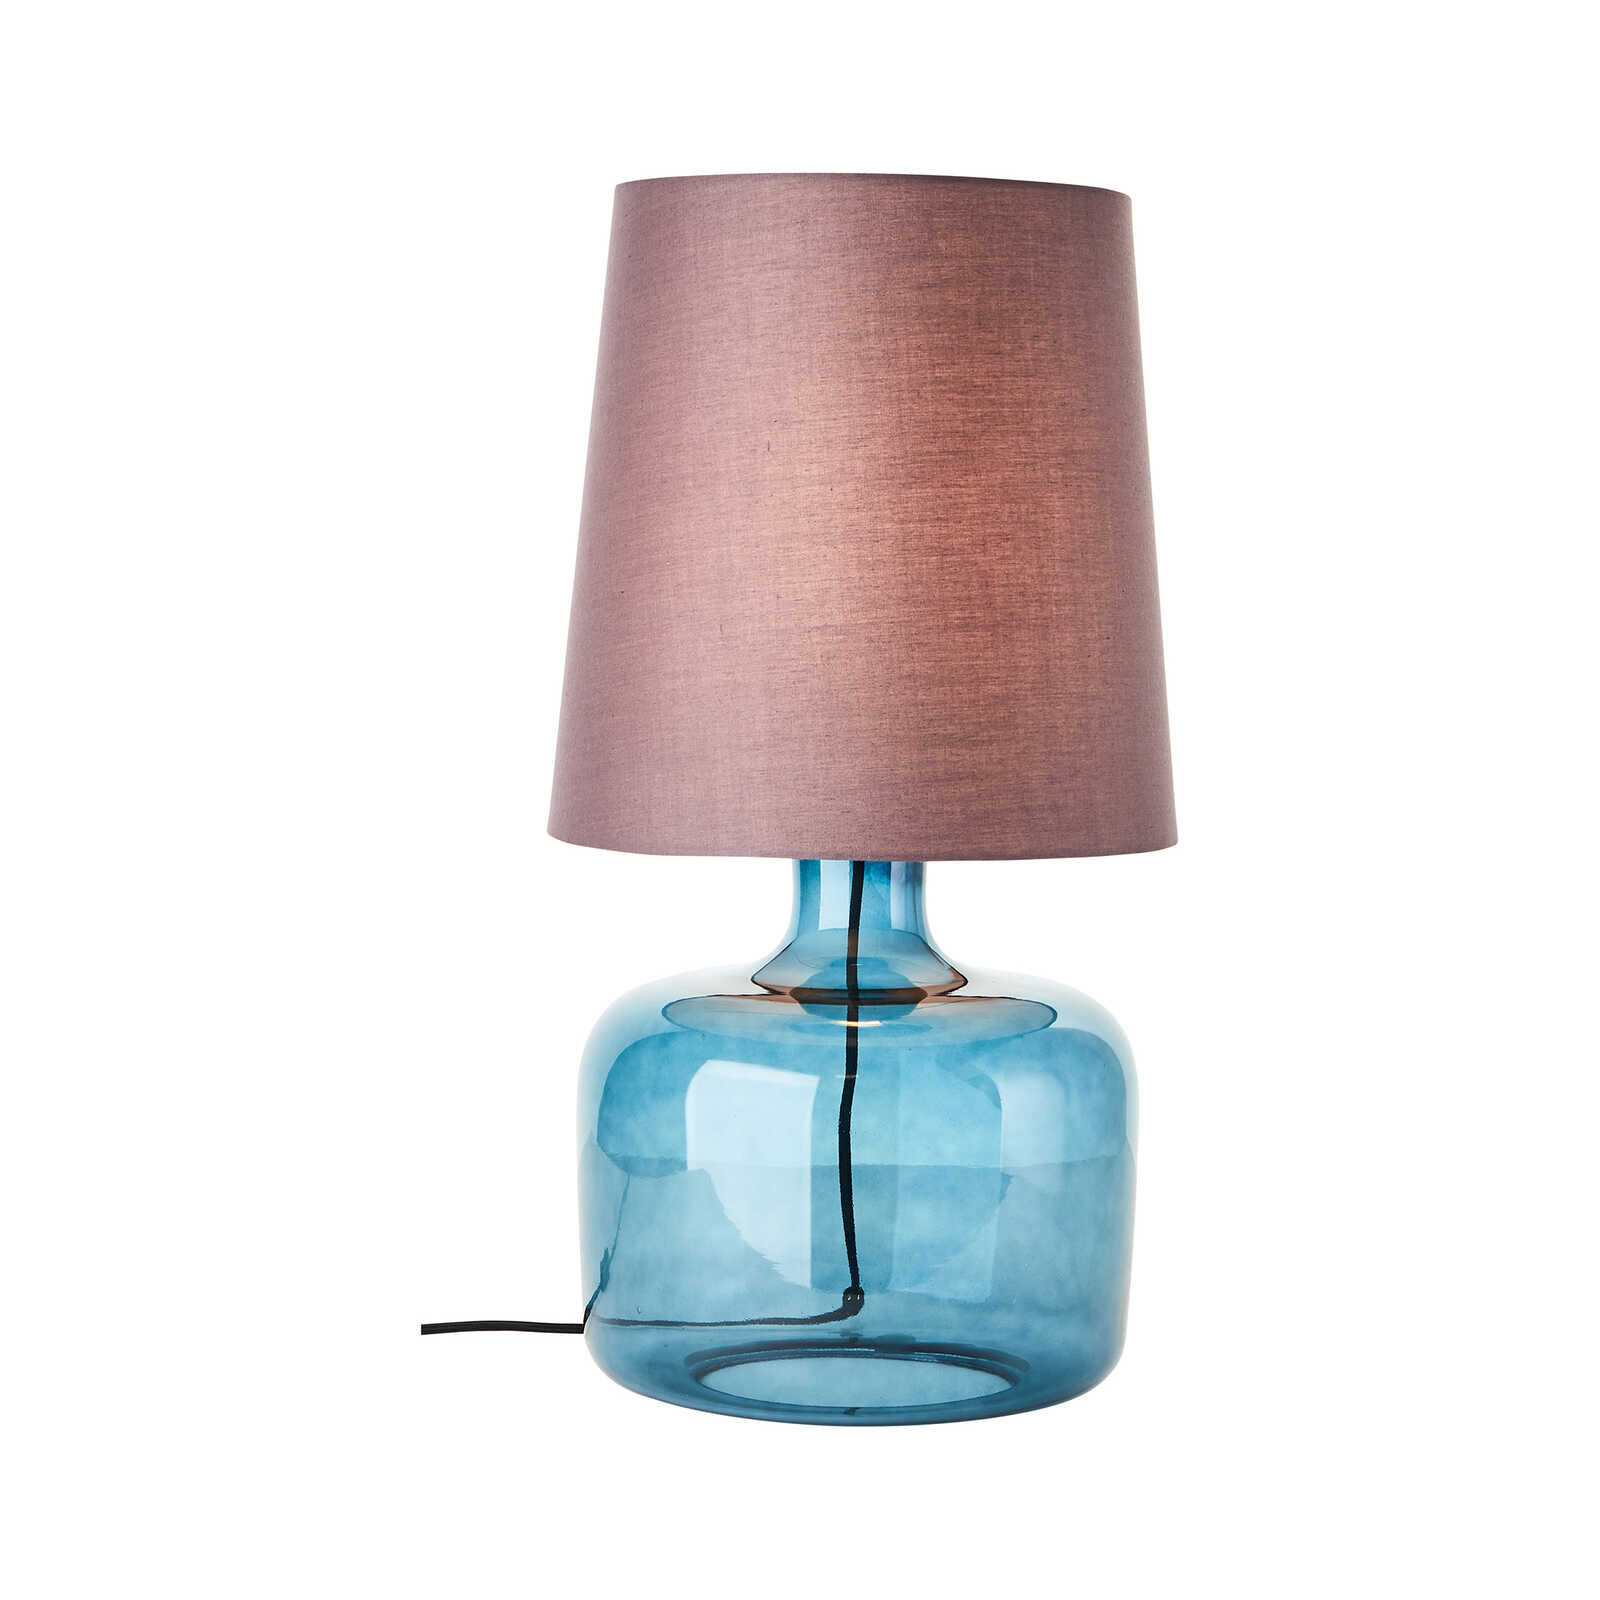 Tafellamp van textiel - Jana 3 - Blauw
